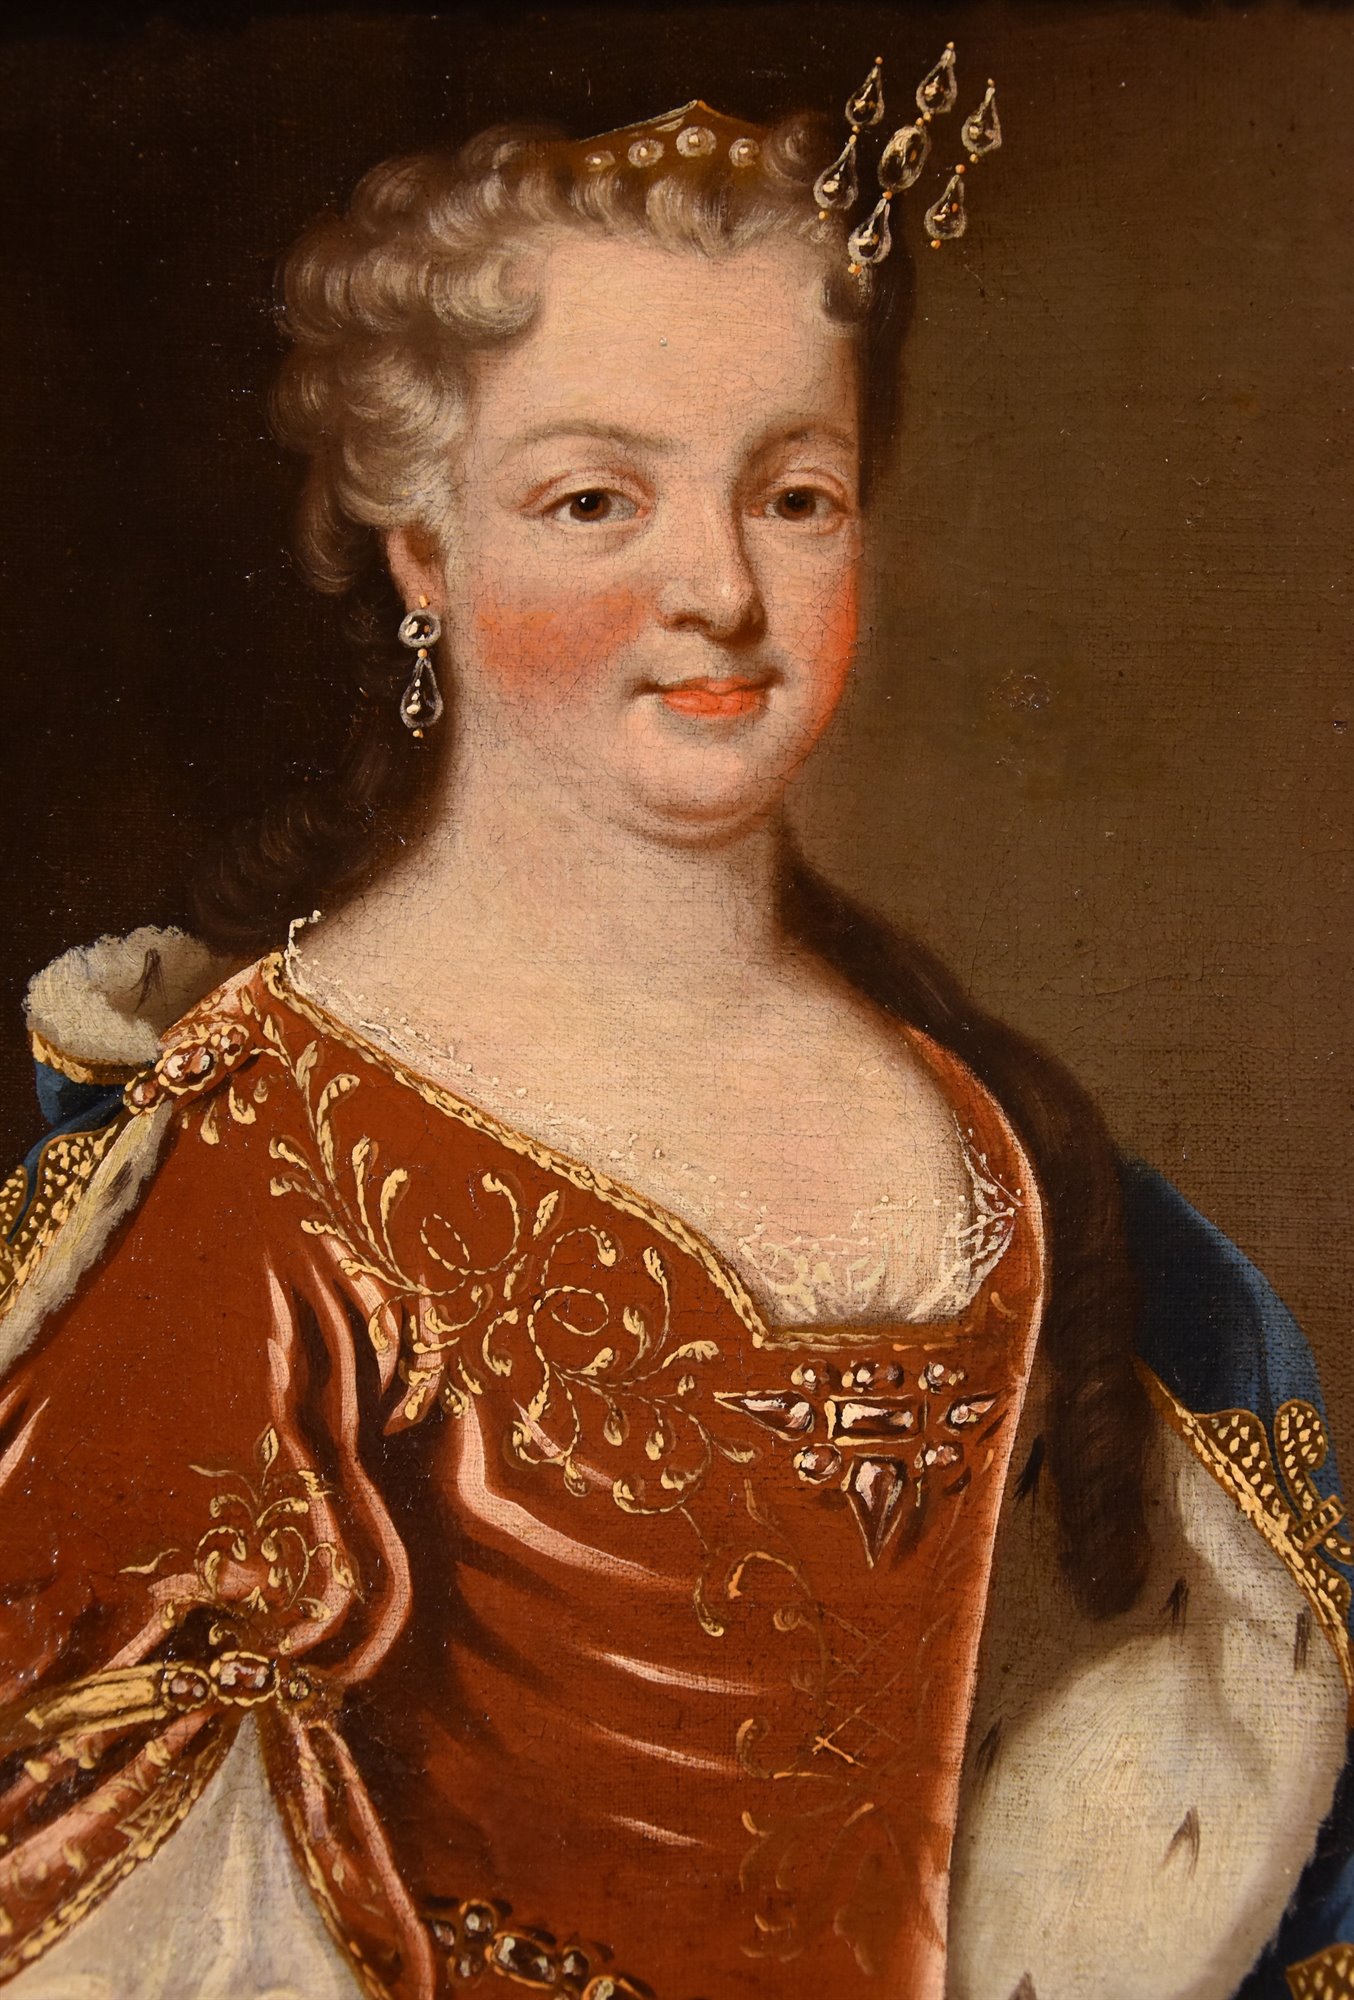 Ritratti di Luigi XV, Re di Francia, e della regina consorte Maria Leszczyńska